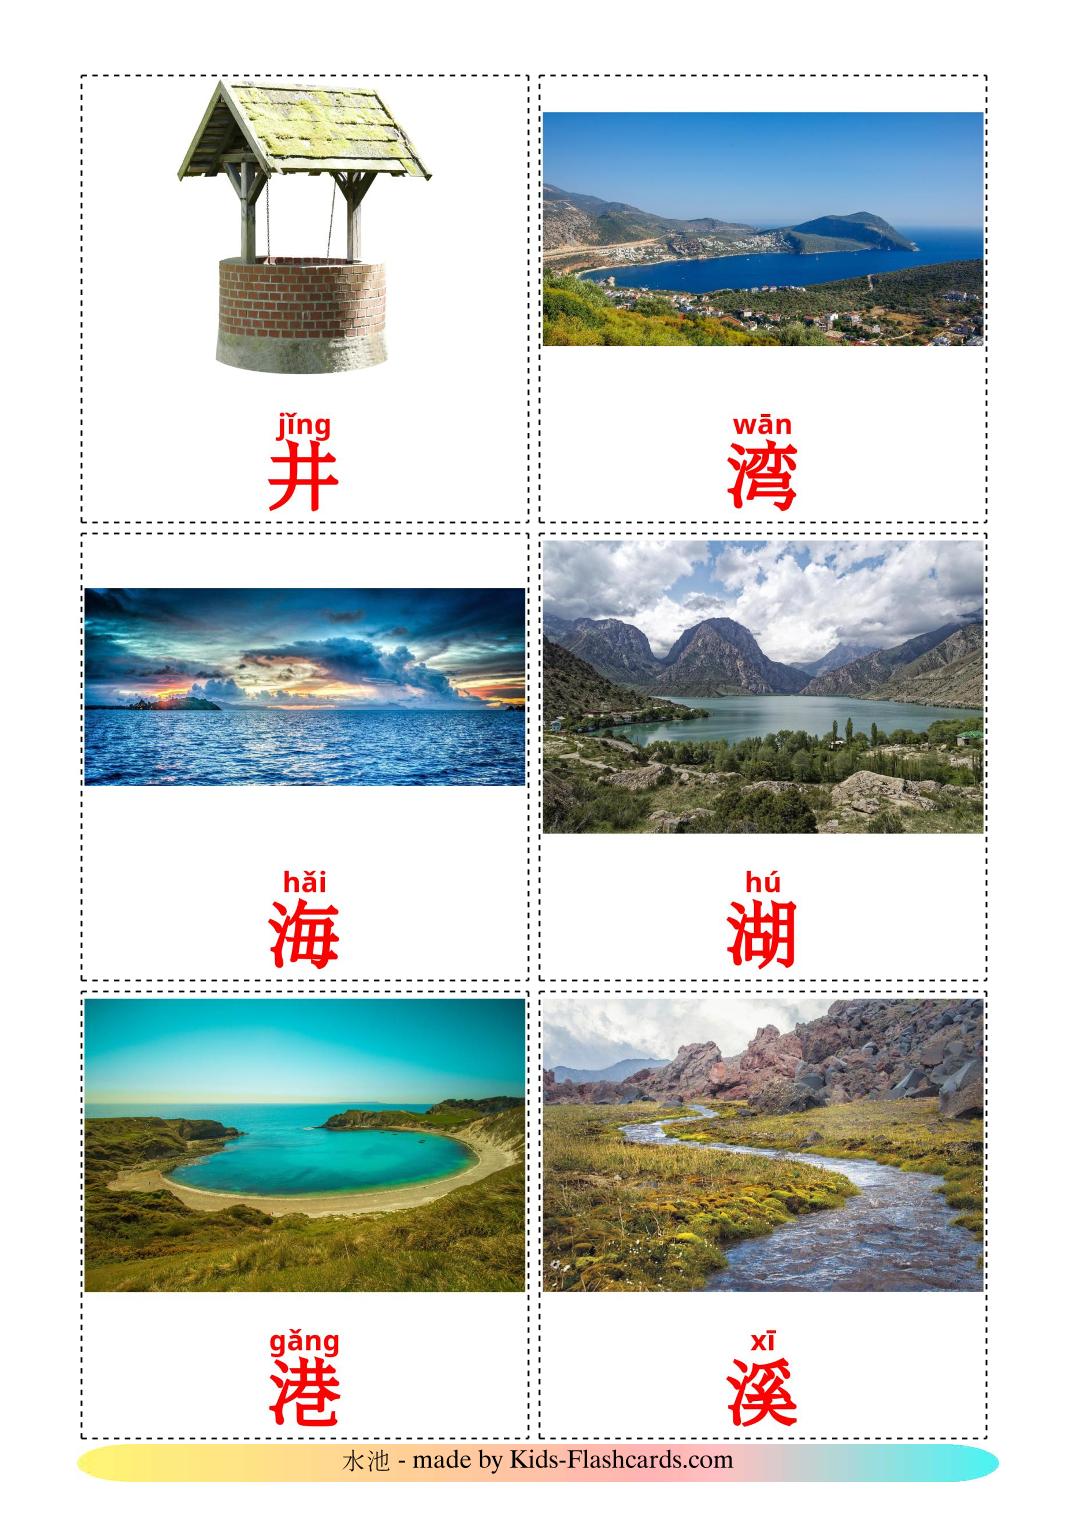 Corpi d'acqua - 30 flashcards cinese(semplificato) stampabili gratuitamente